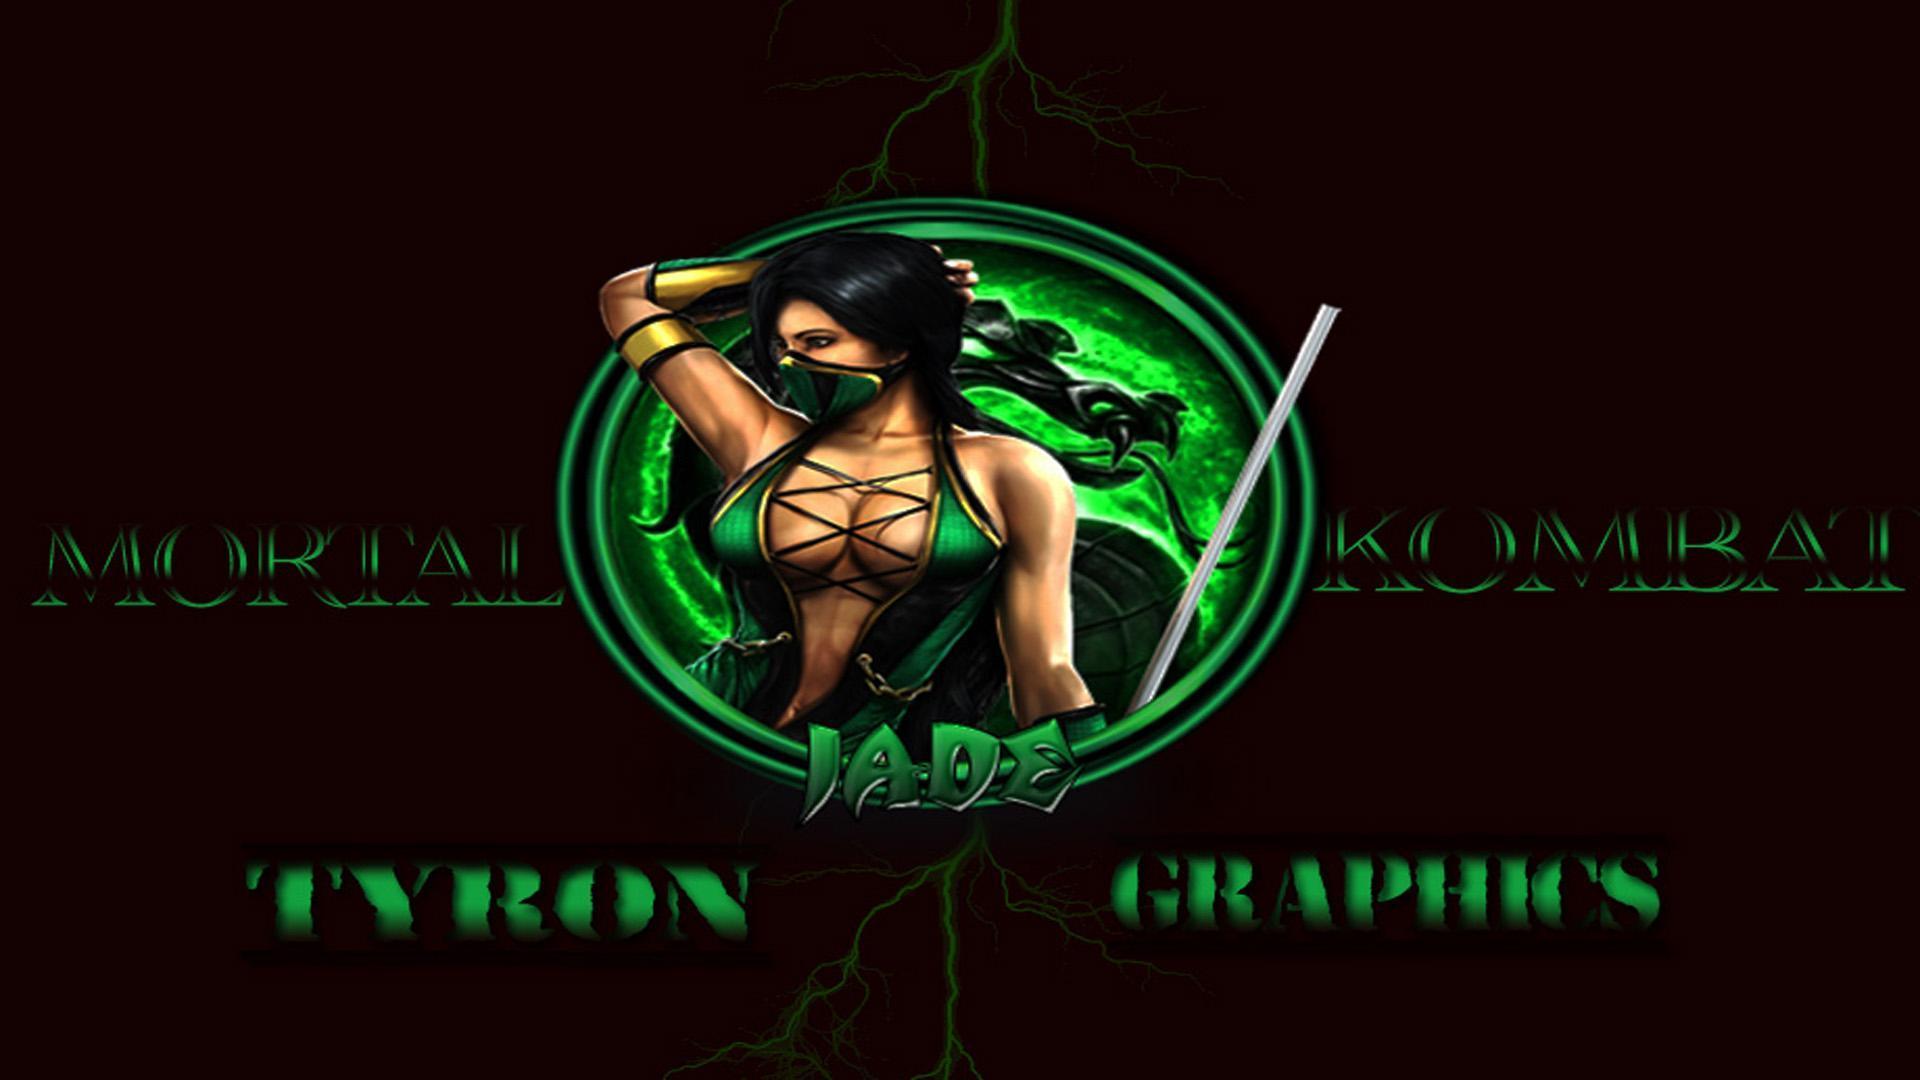 Jade From Mortal Kombat HD desktop wallpaper, Widescreen, High